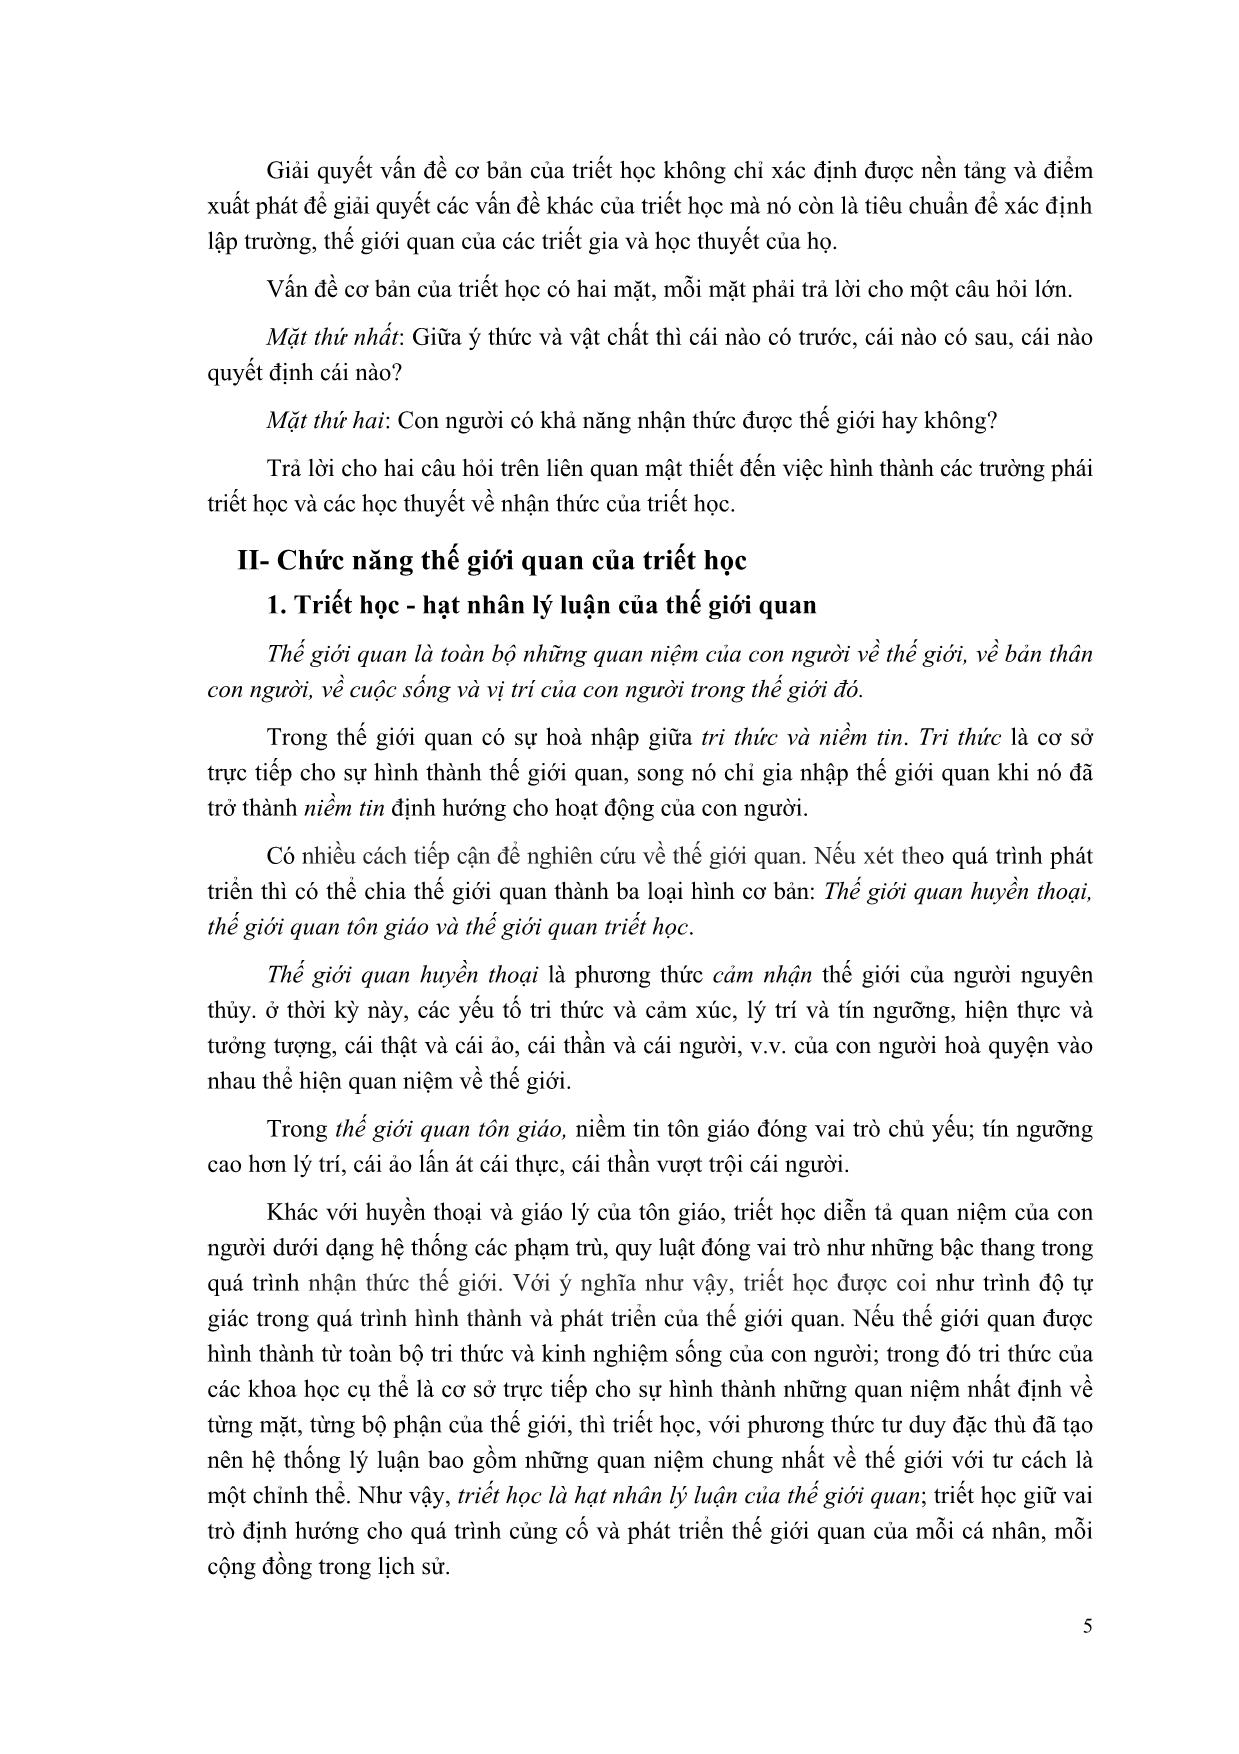 Giáo trình Triết học Mác-Lênin (Mới) trang 6